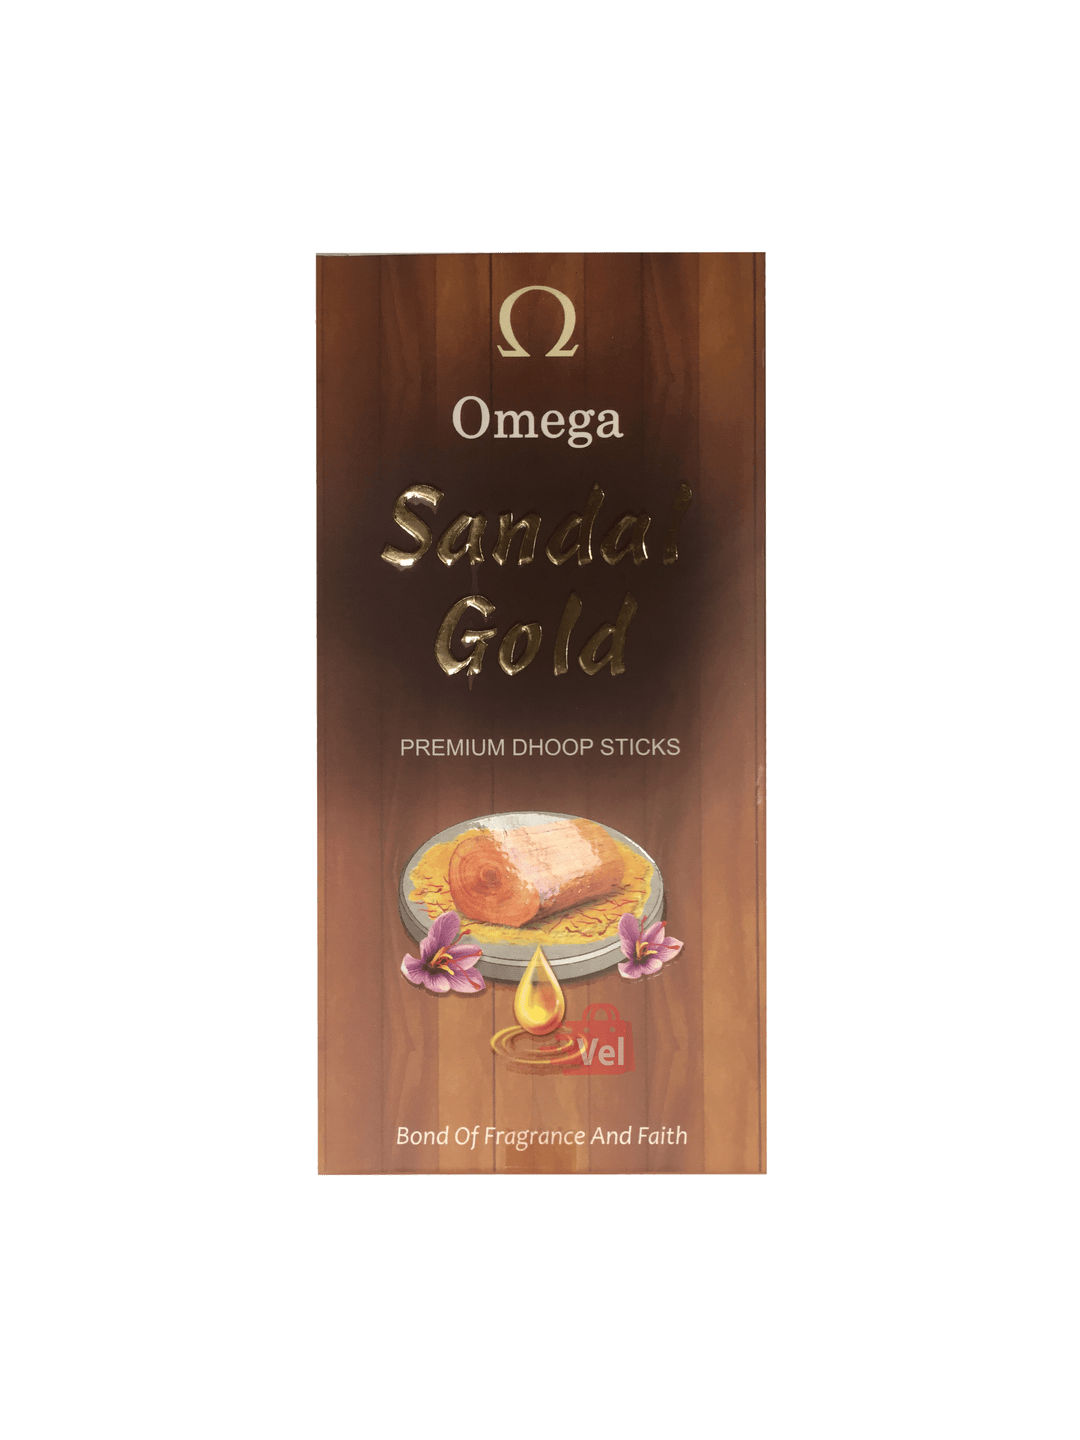 Omega Sandal Gold Dhoop Sticks